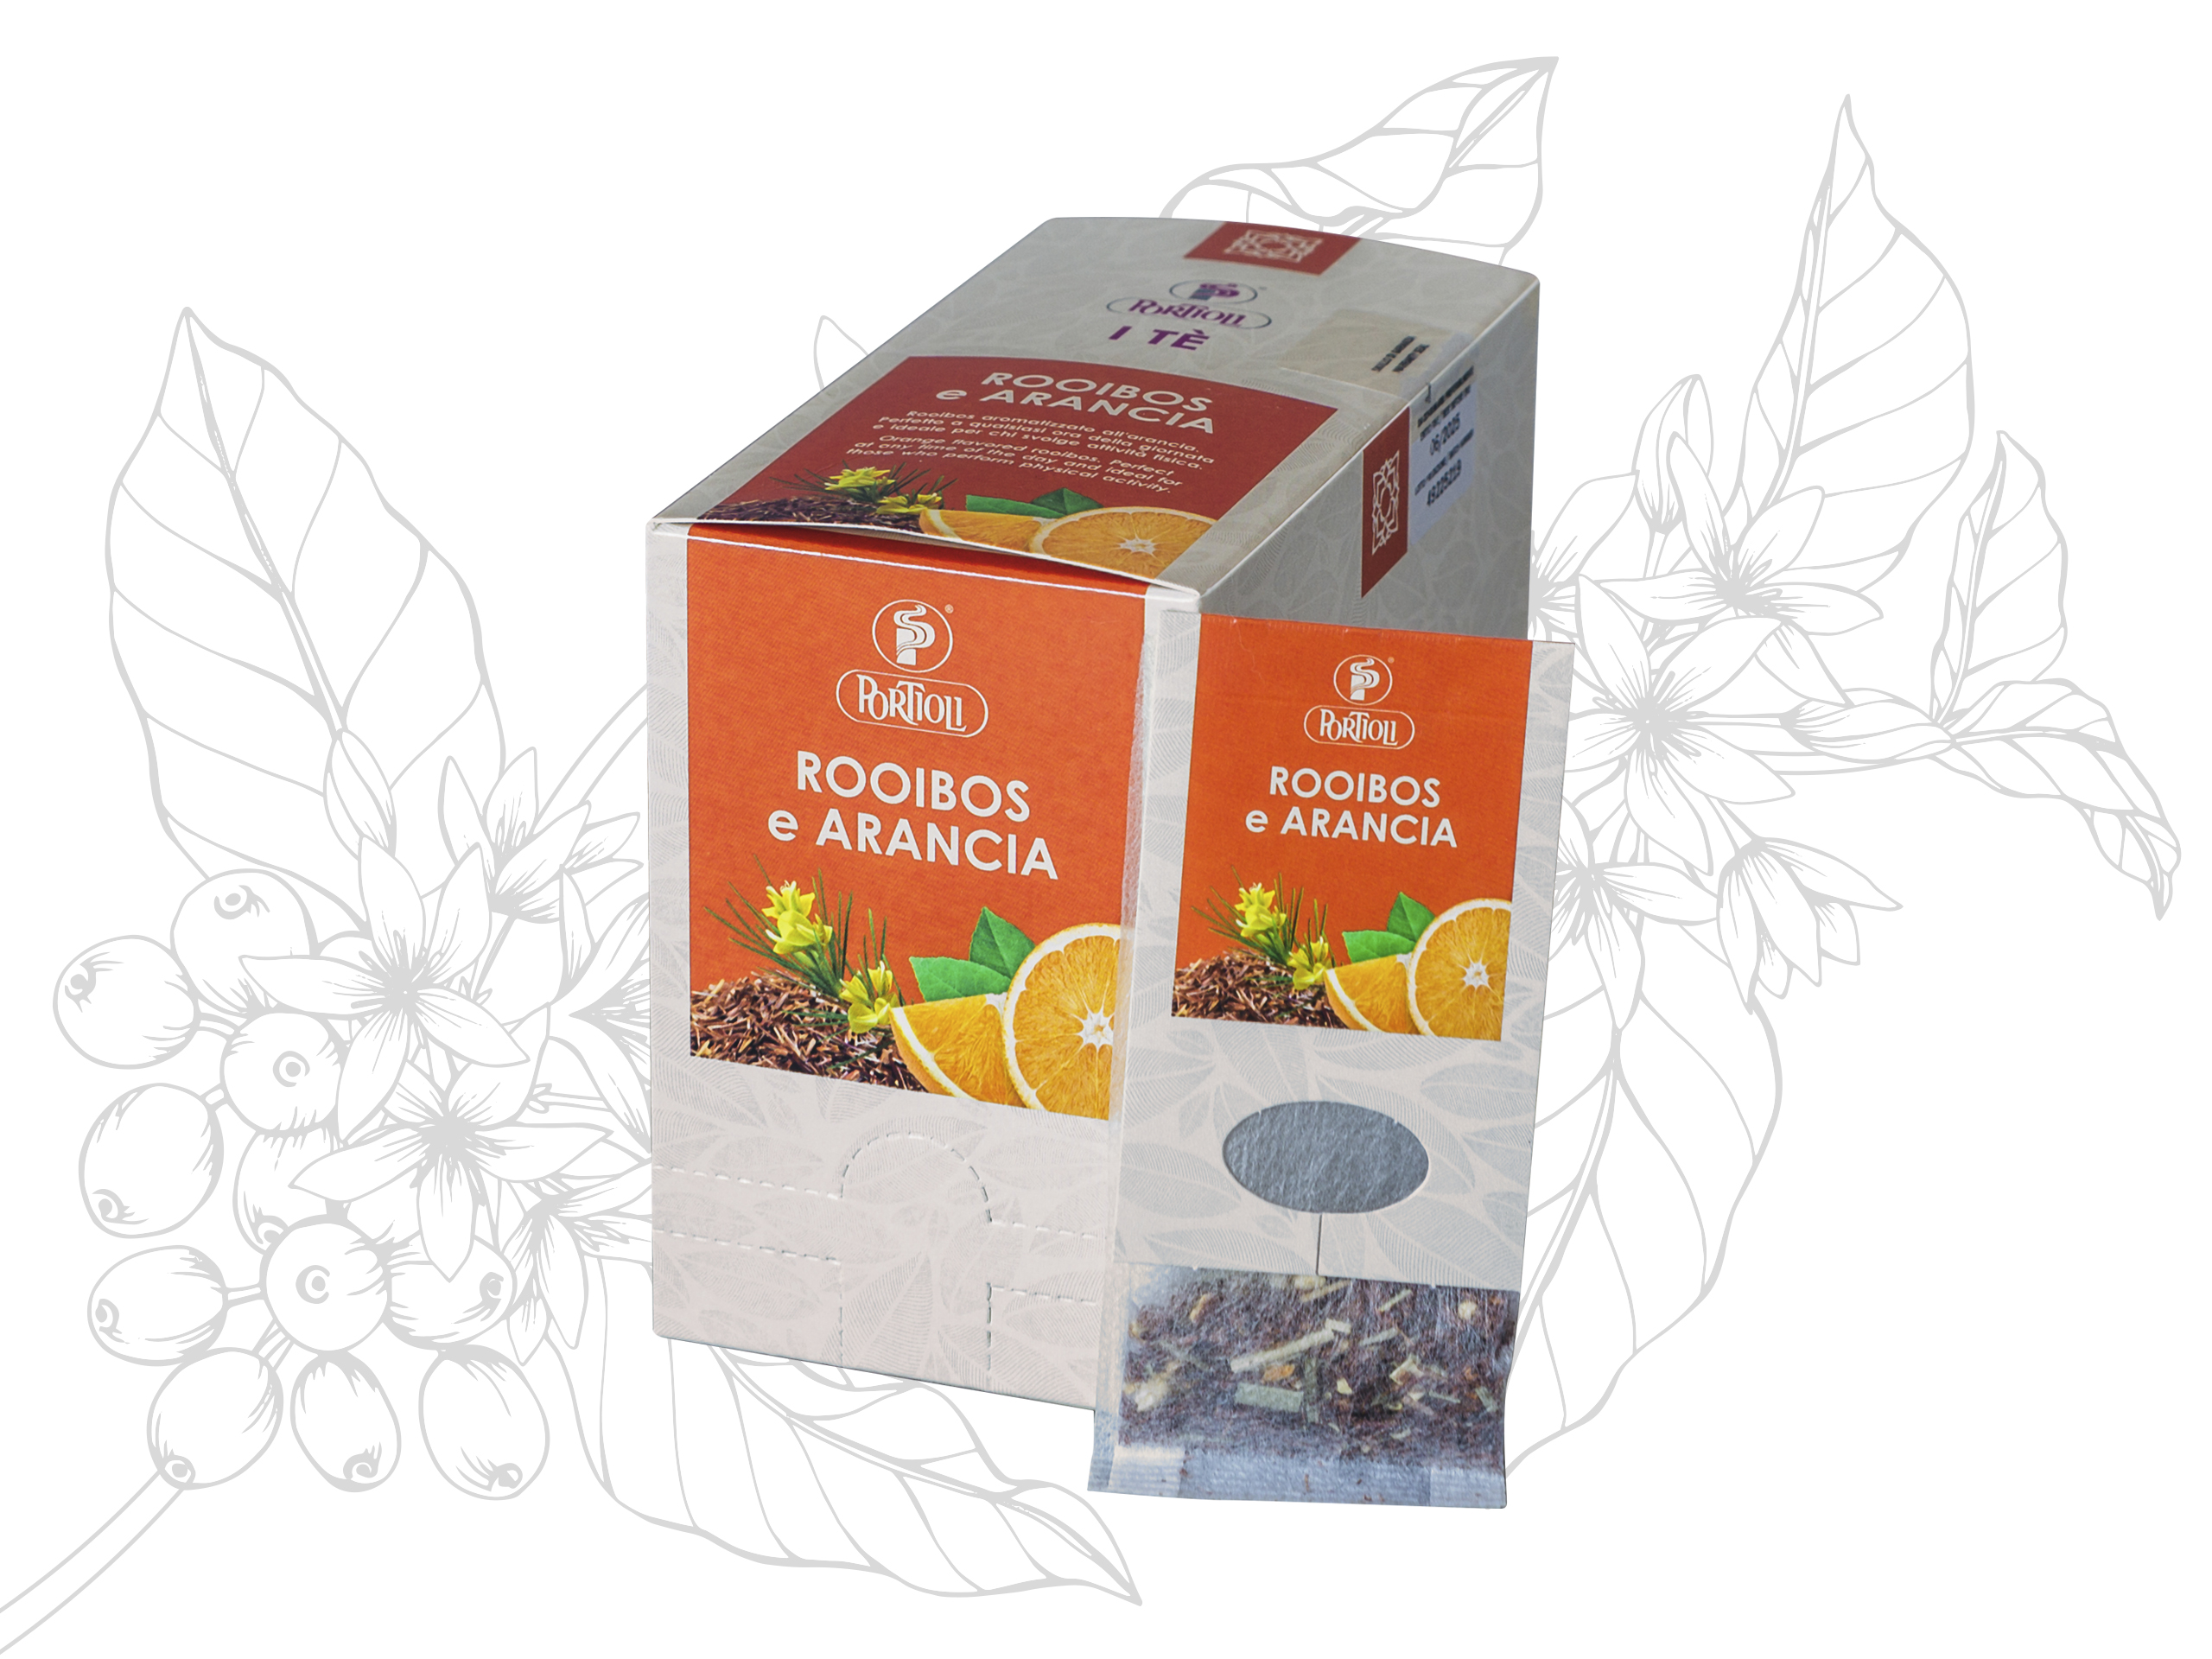 Rooibos and Orange Portioli Tea